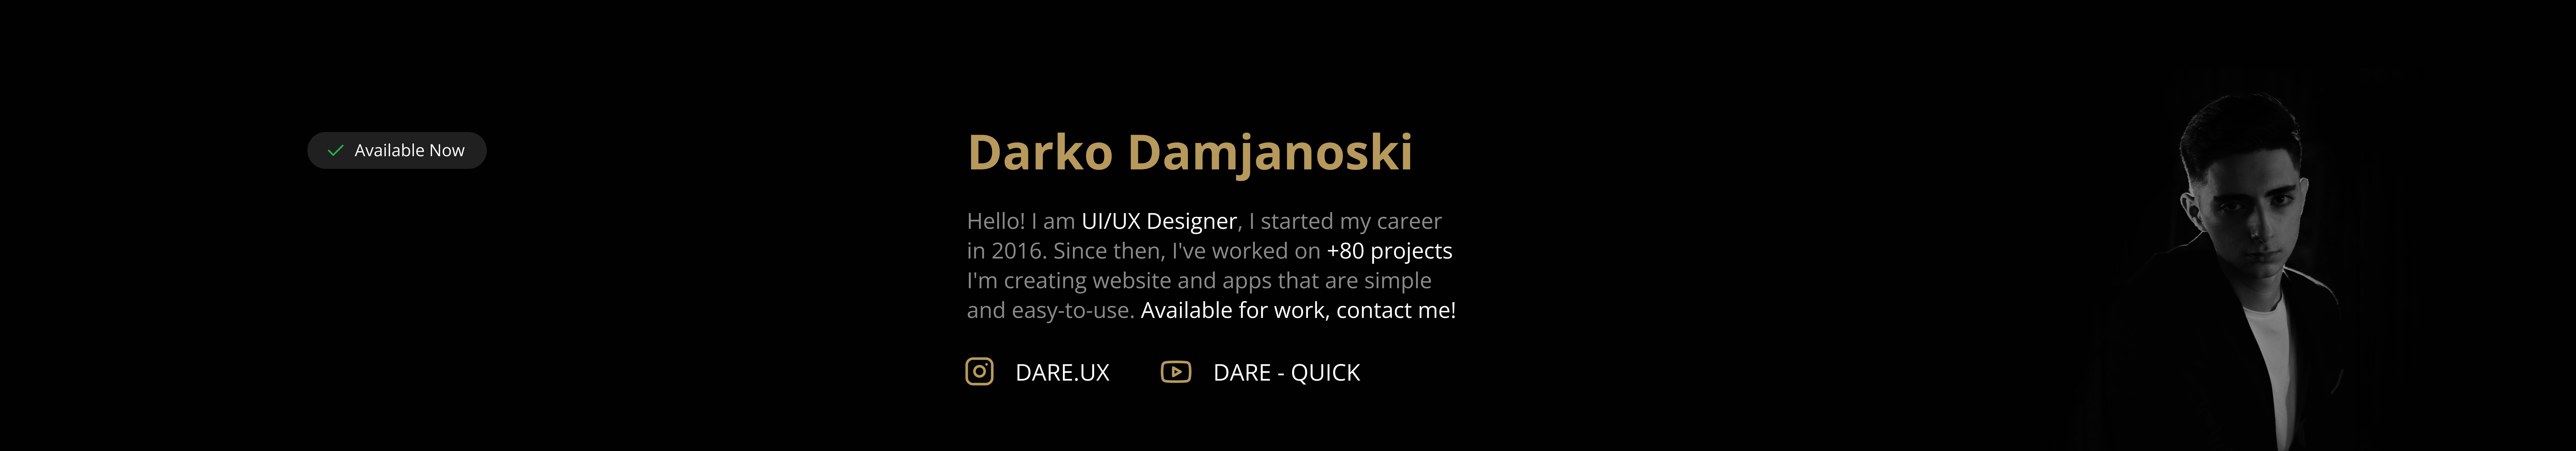 Darko Damjanoski 的個人檔案橫幅